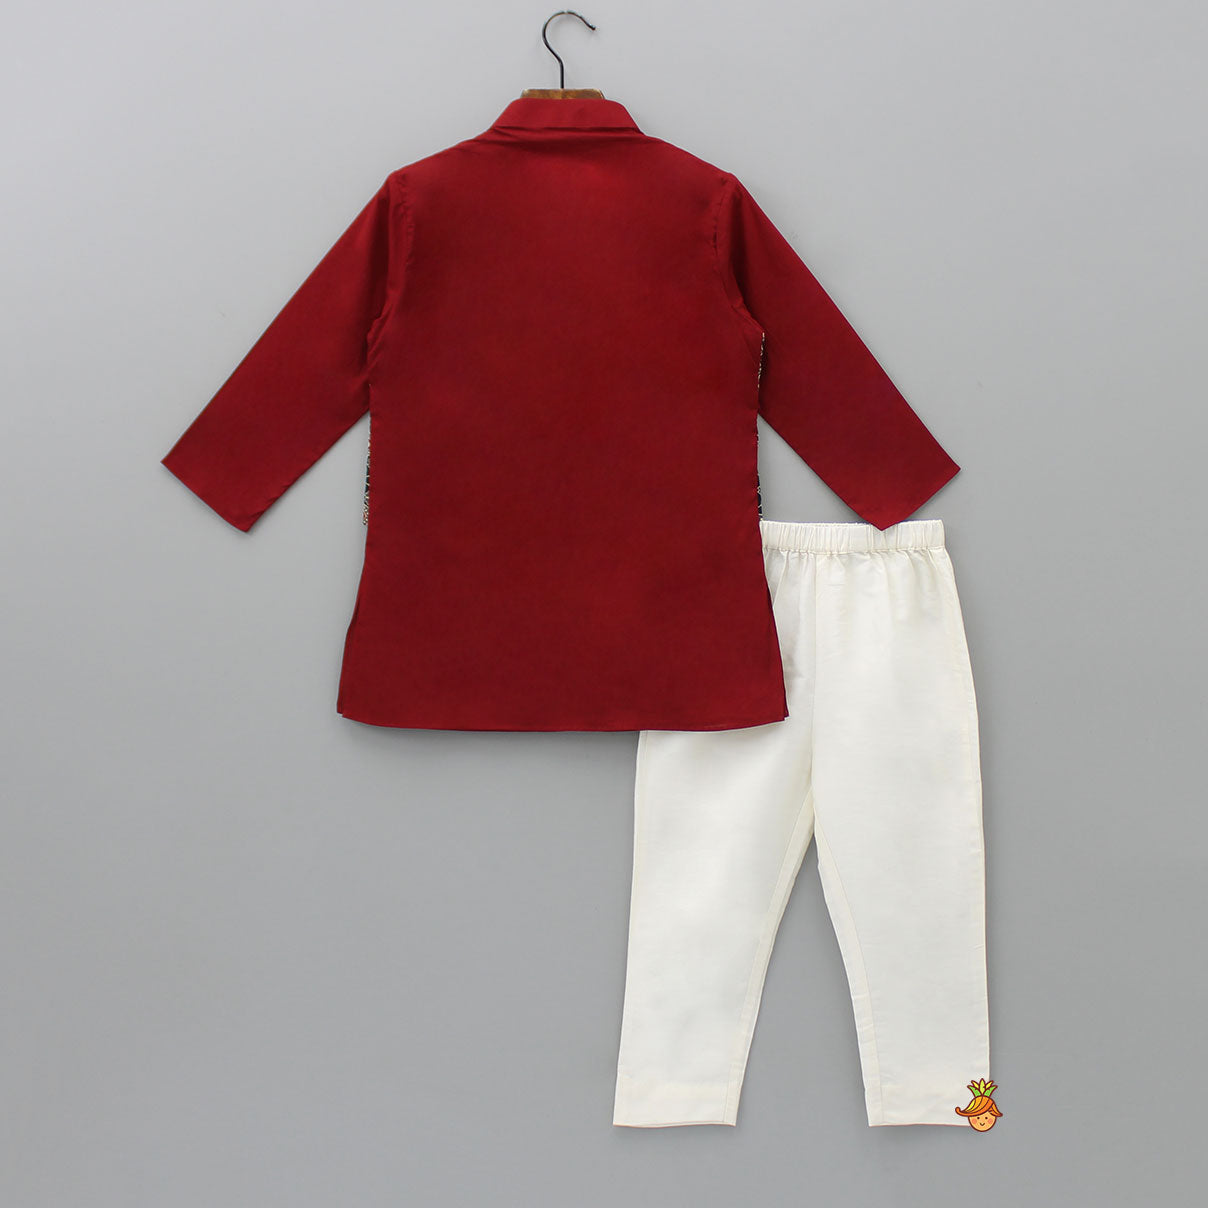 Ajrakh Printed Jacket Style Maroon Kurta And Pyjama